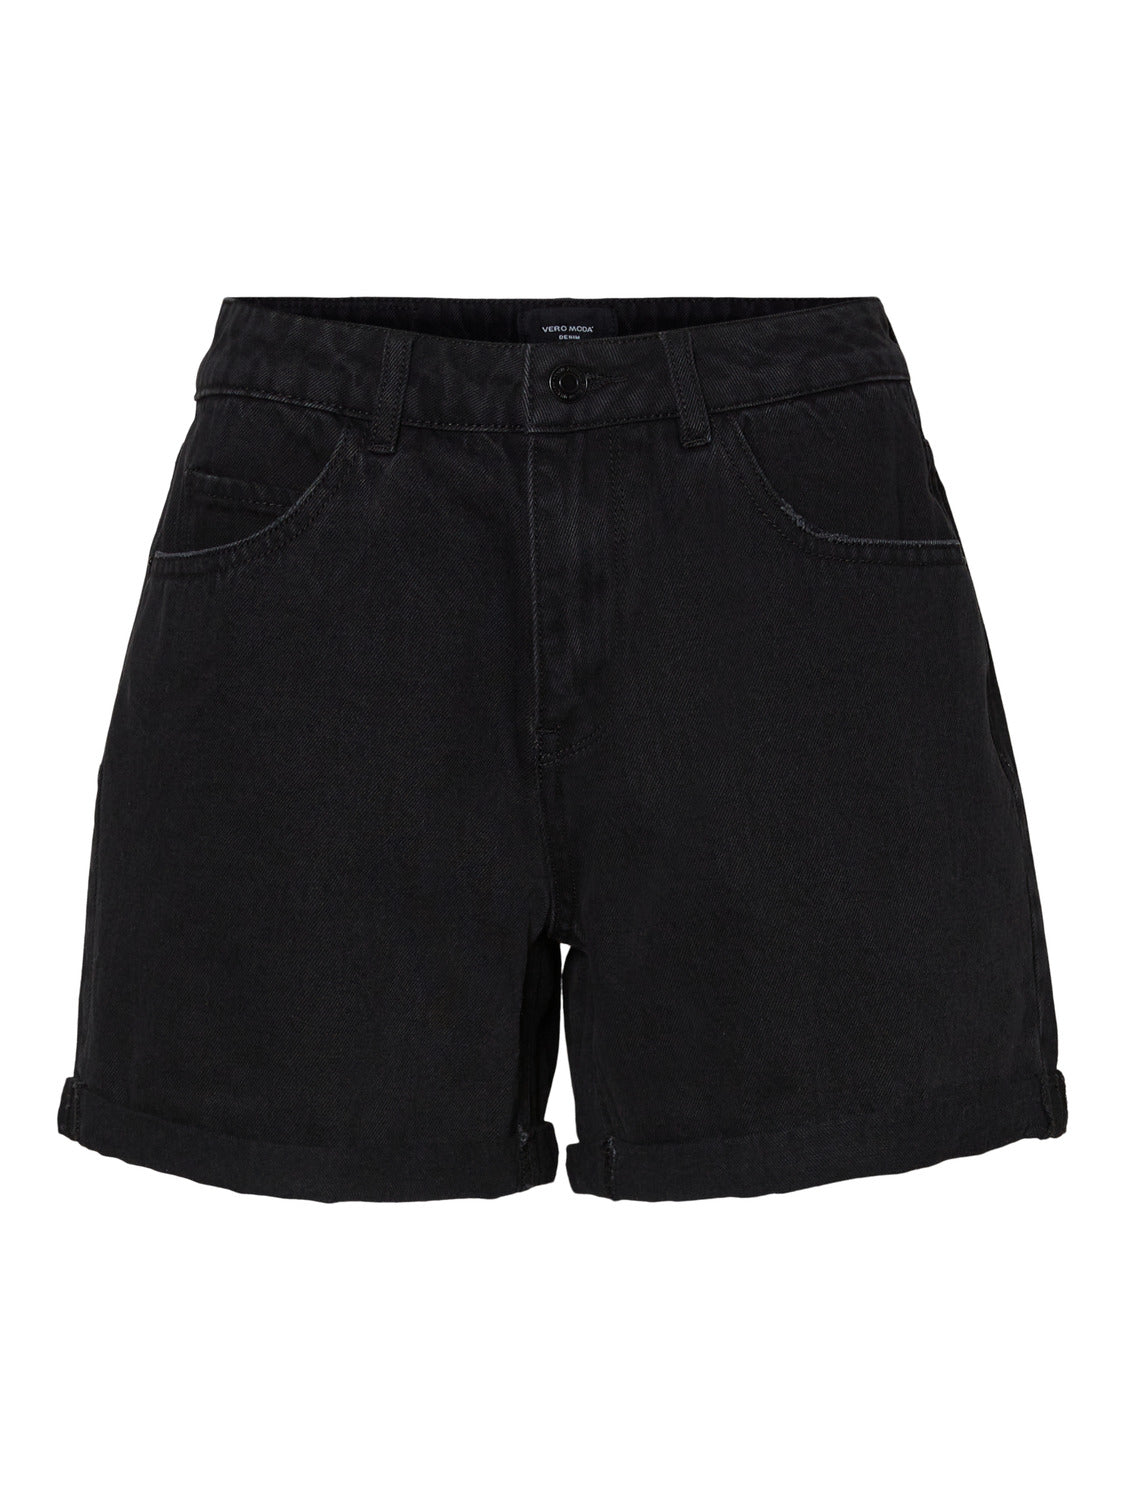 VMNINETEEN Shorts - Black